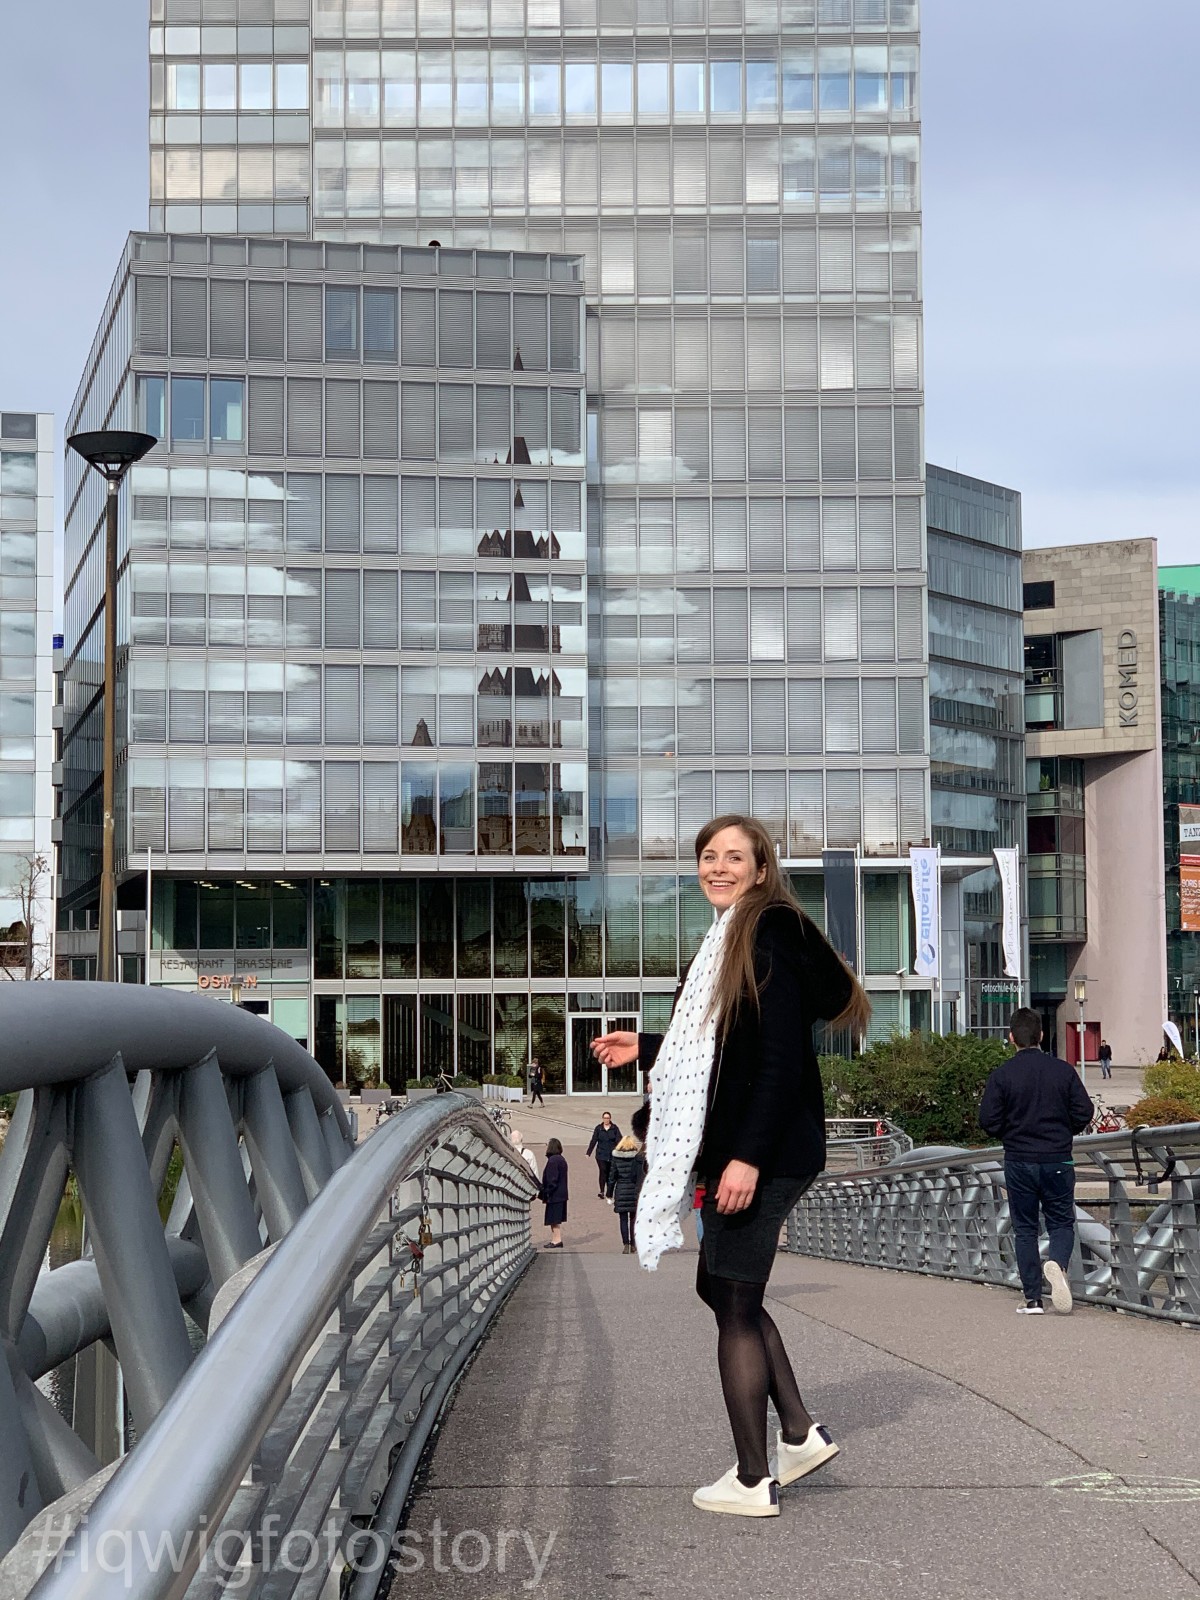 IQWiG-Mitarbeiterin Vanessa steht auf einer Brücke und lächelt freundlich in die Kamera. Im Hintergrund ist ein Gebäude mit Glasfassade.